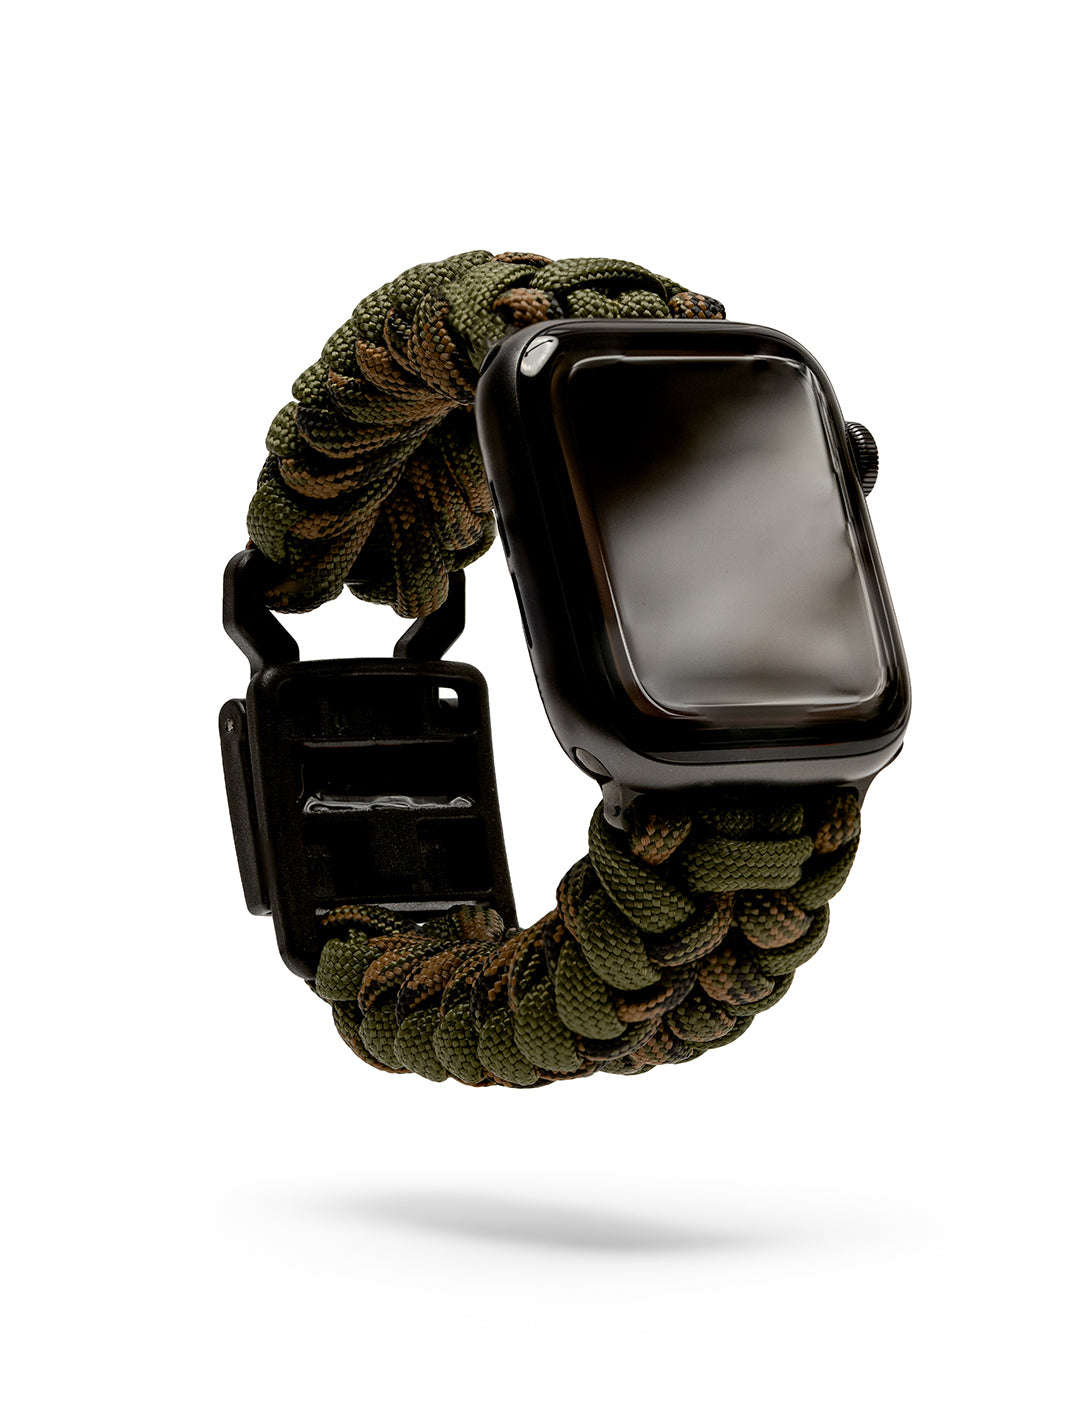 Strapcord Ribs Apple Watch Strap Article 008 Guerilla Camo 1 1065 x 1420